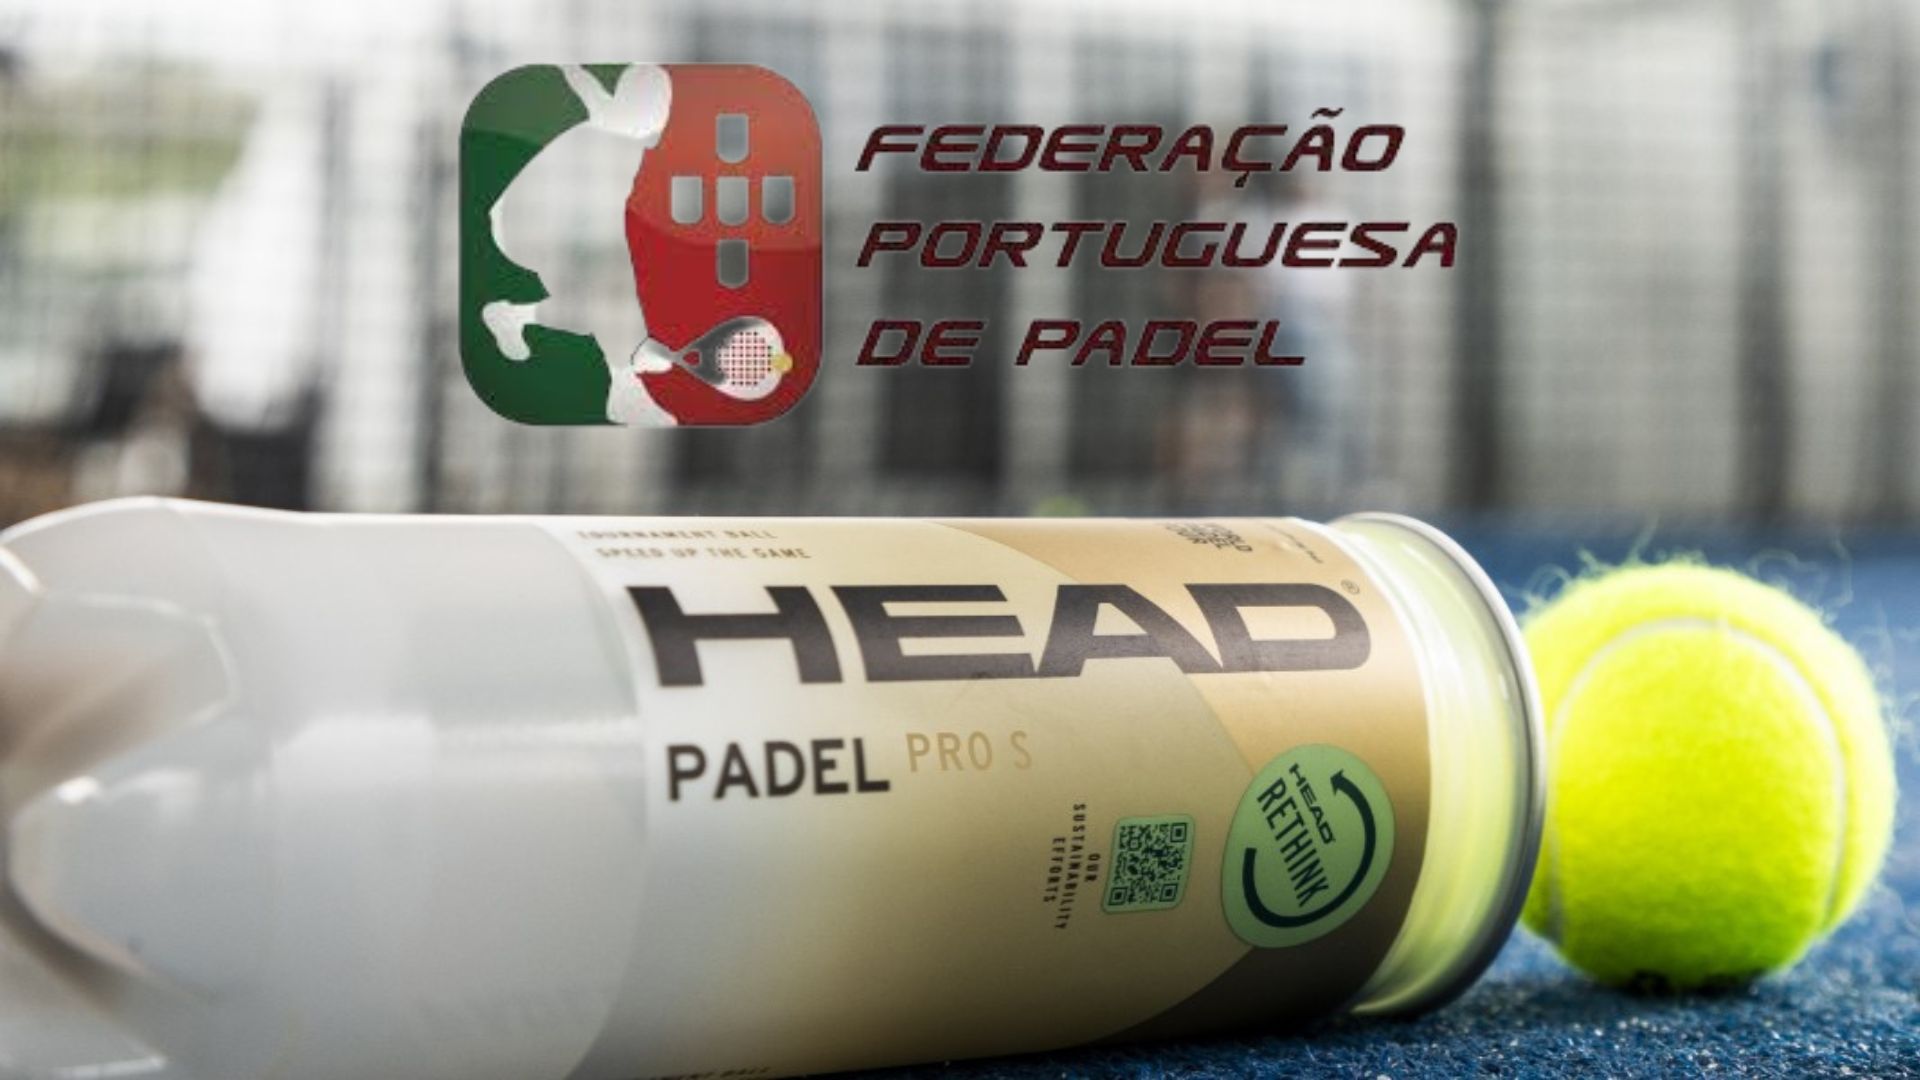 Head renueva su contrato con la Federación Portuguesa de padel, con algo nuevo!